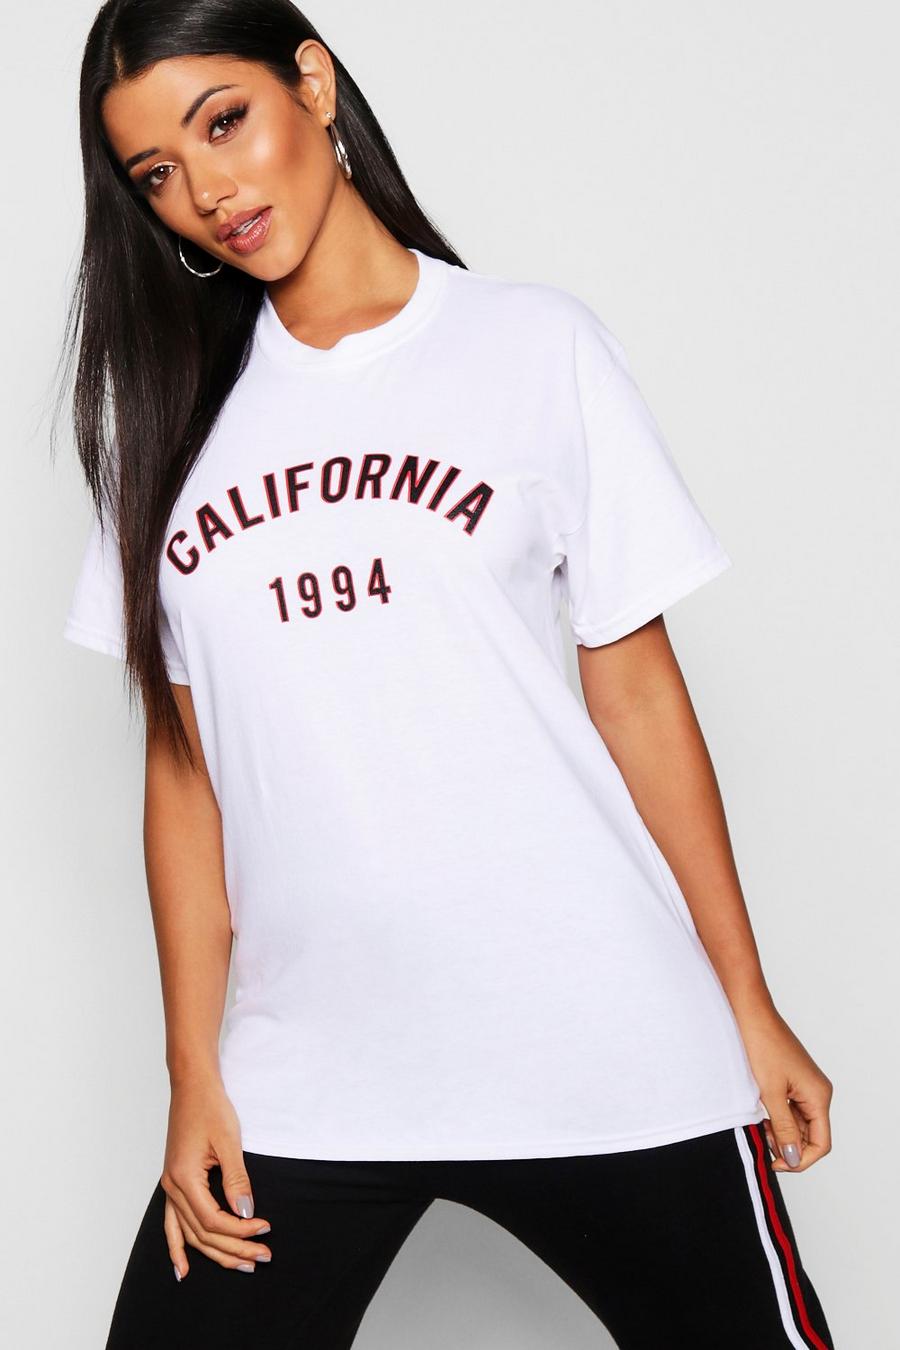 Camiseta con eslogan “California West Coast” image number 1